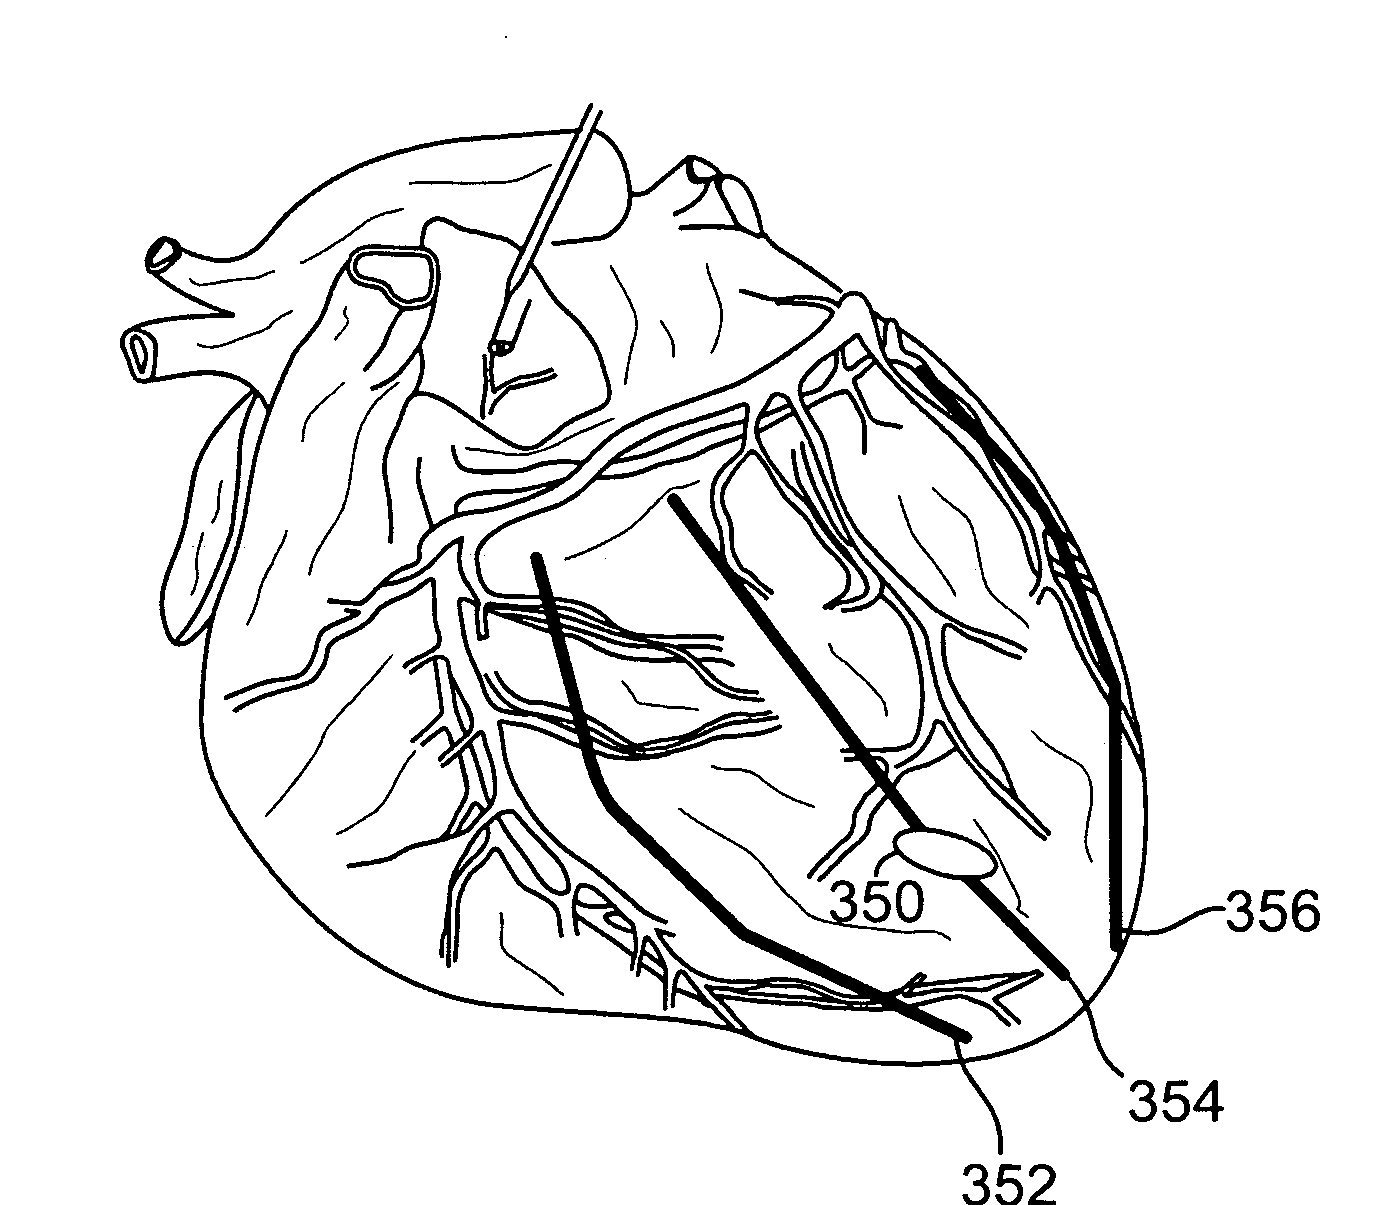 Cardiac patterning for improving diastolic function